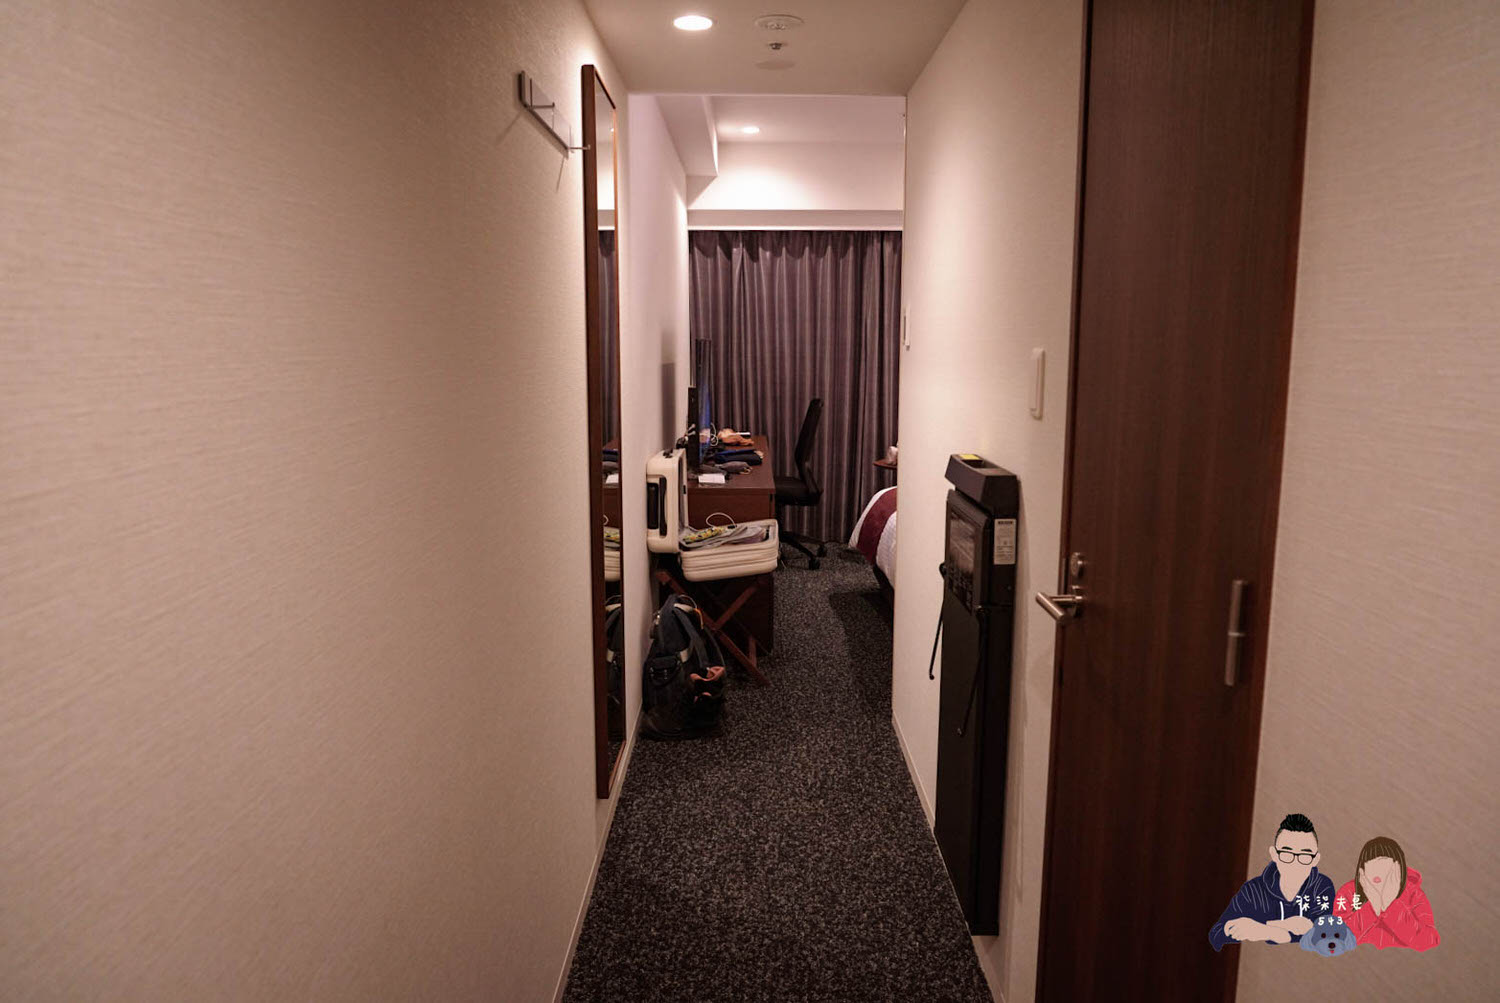 神戶三宮中央大道大和ROYNET飯店 (Daiwa Roynet Hotel Kobe Sannomiya Chuo Dori) (22)